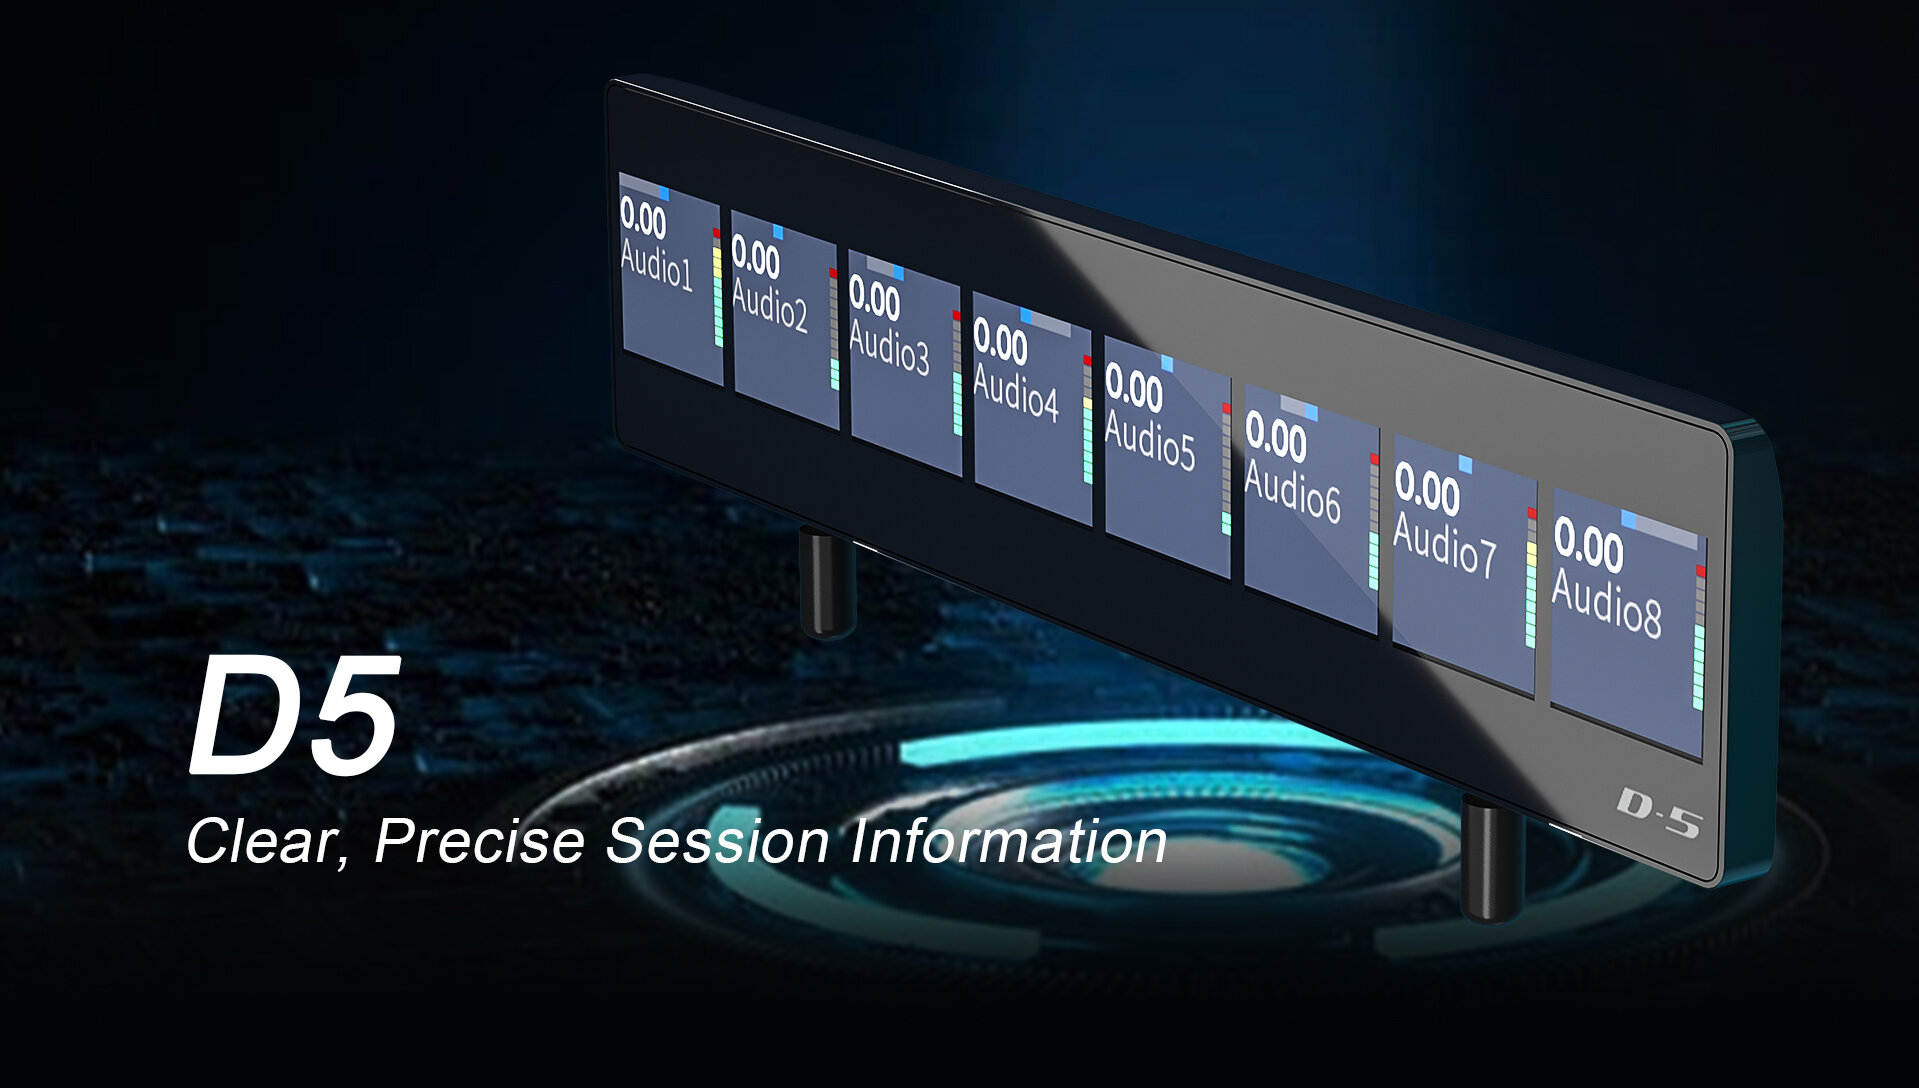 ICON D5 - Дополнительный OLED дисплей с магнитным креплением для контроллера P1 Nano, упрощает процесс мониторинга микса, обеспечивает четкое отображение параметров измерения канала, позволяет получить доступ к данным параметров плагина и эквалайзера